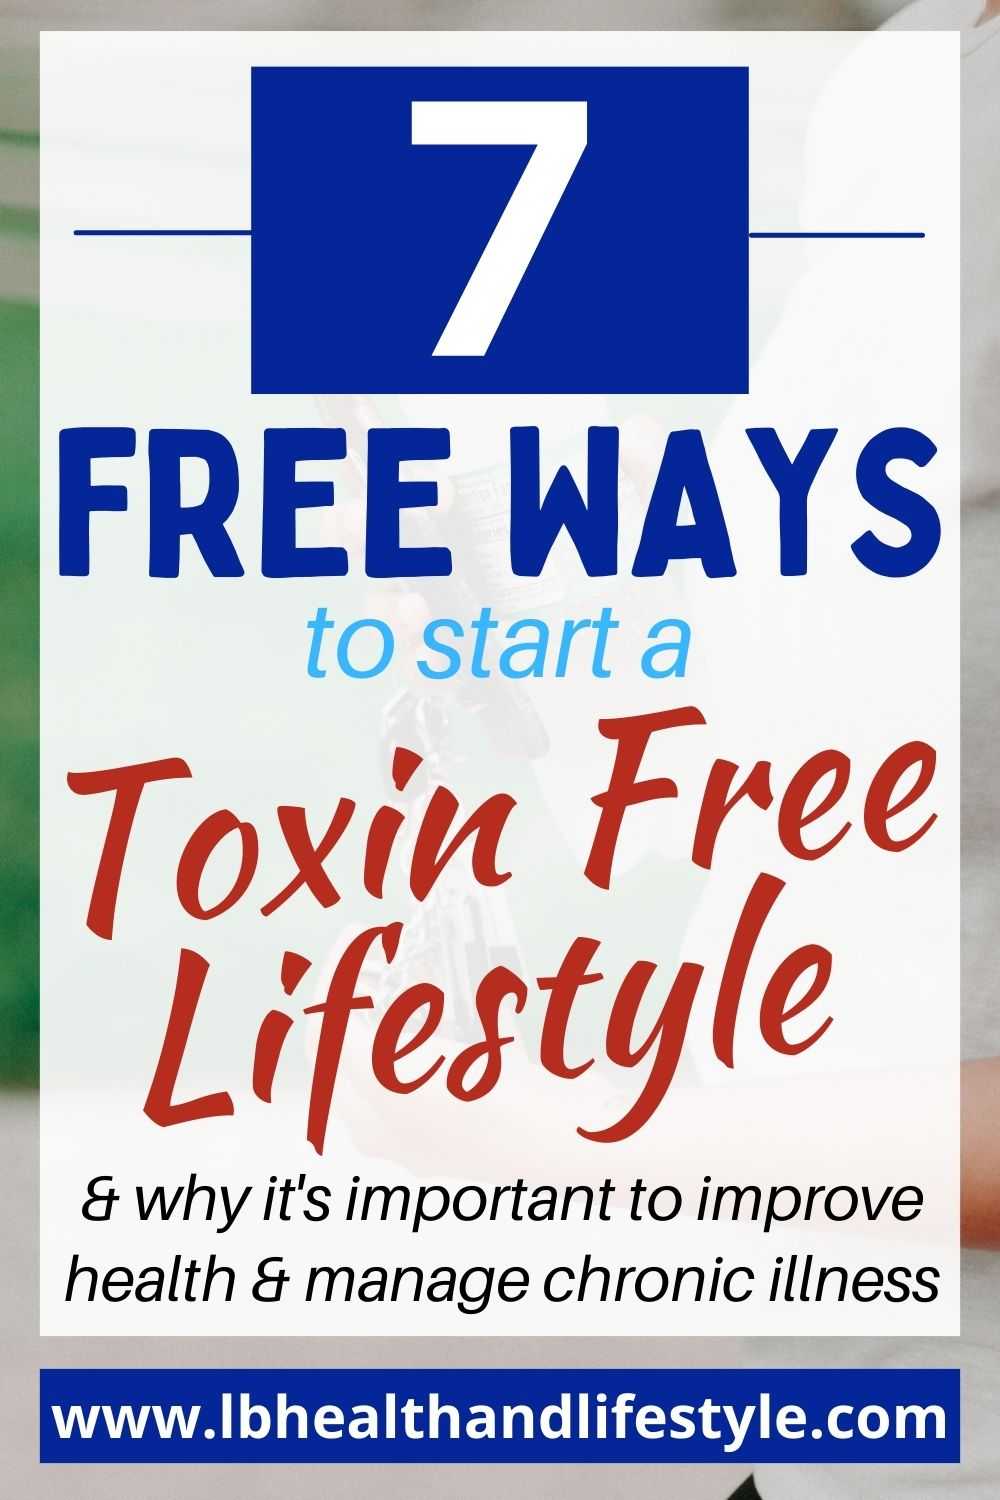 7 free ways to start a toxin free lifestyle